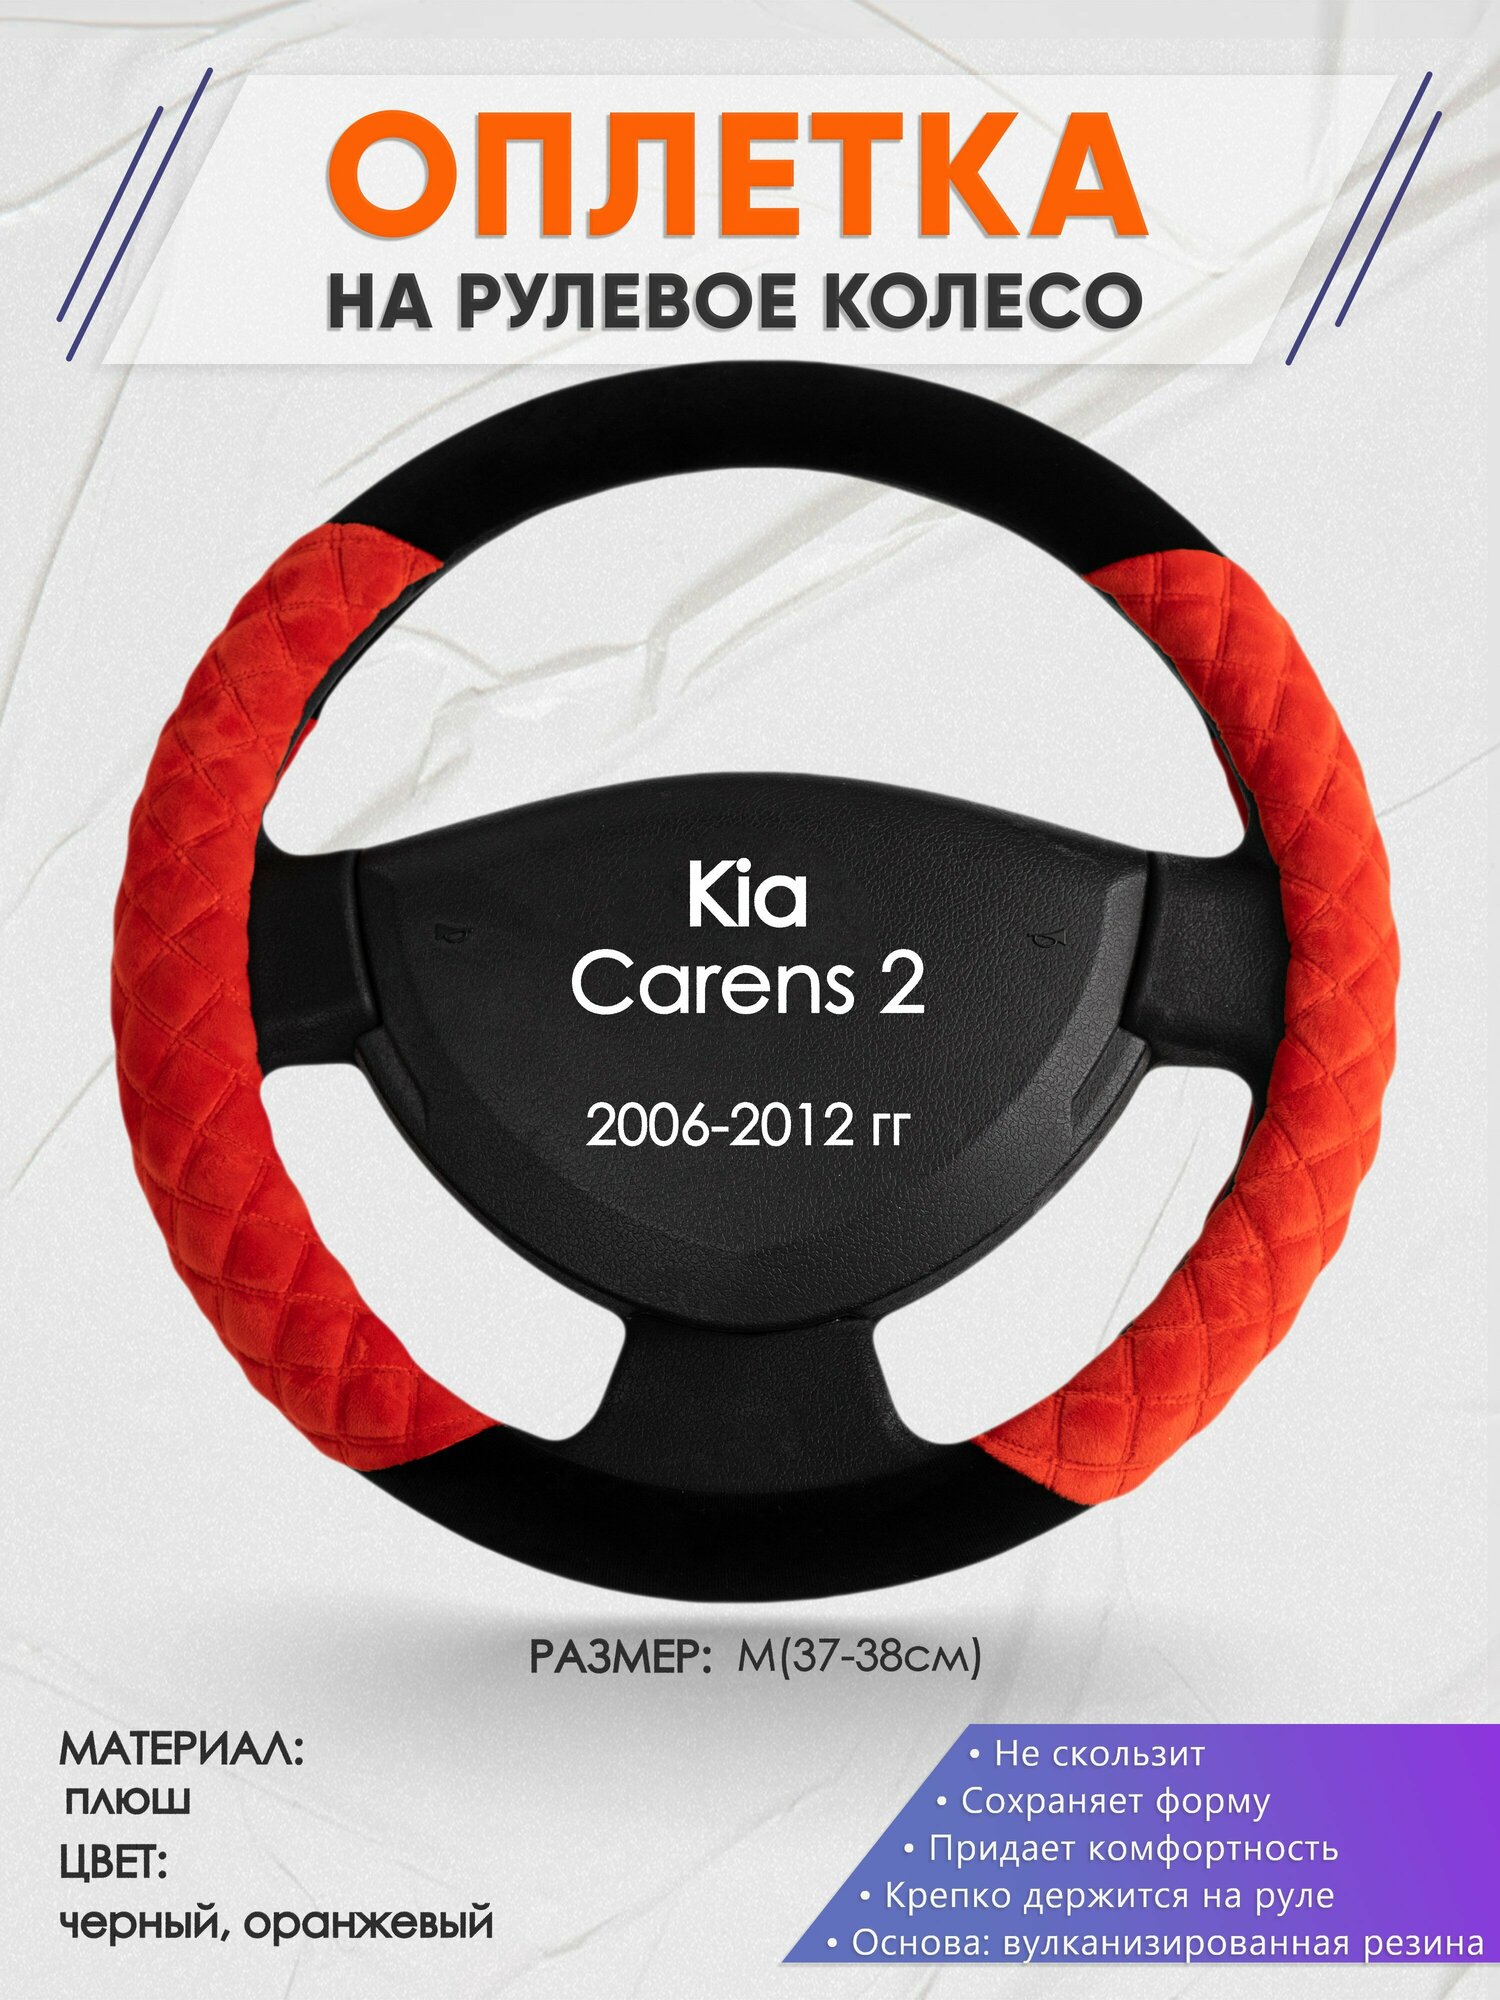 Оплетка на руль для Kia Carens 2(Киа Каренс 2) 2006-2012, M(37-38см), Замша 37